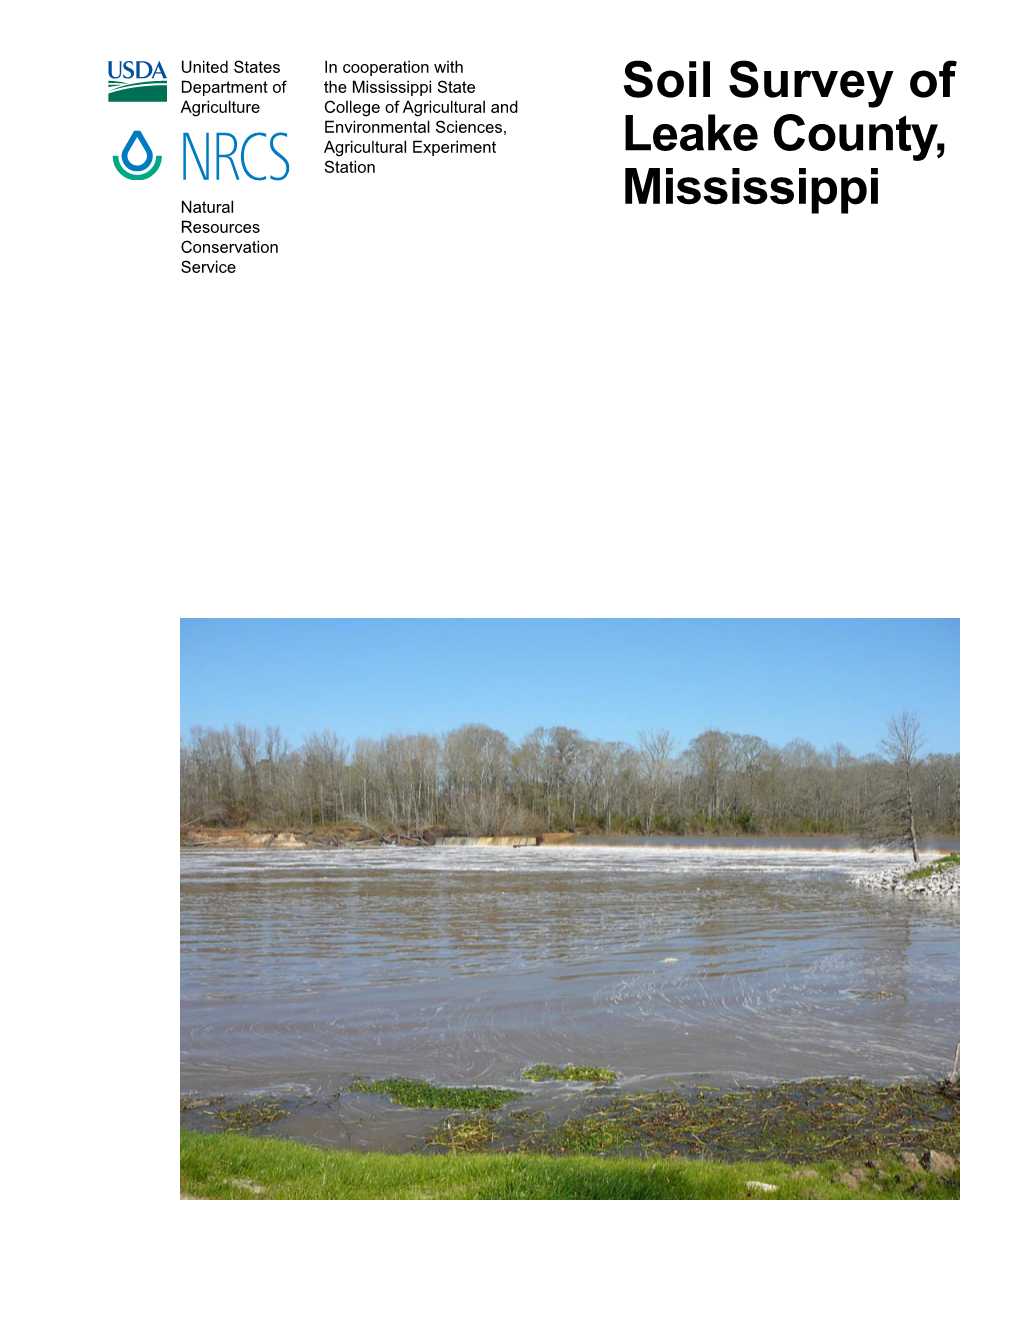 Soil Survey of Leake County, Mississippi